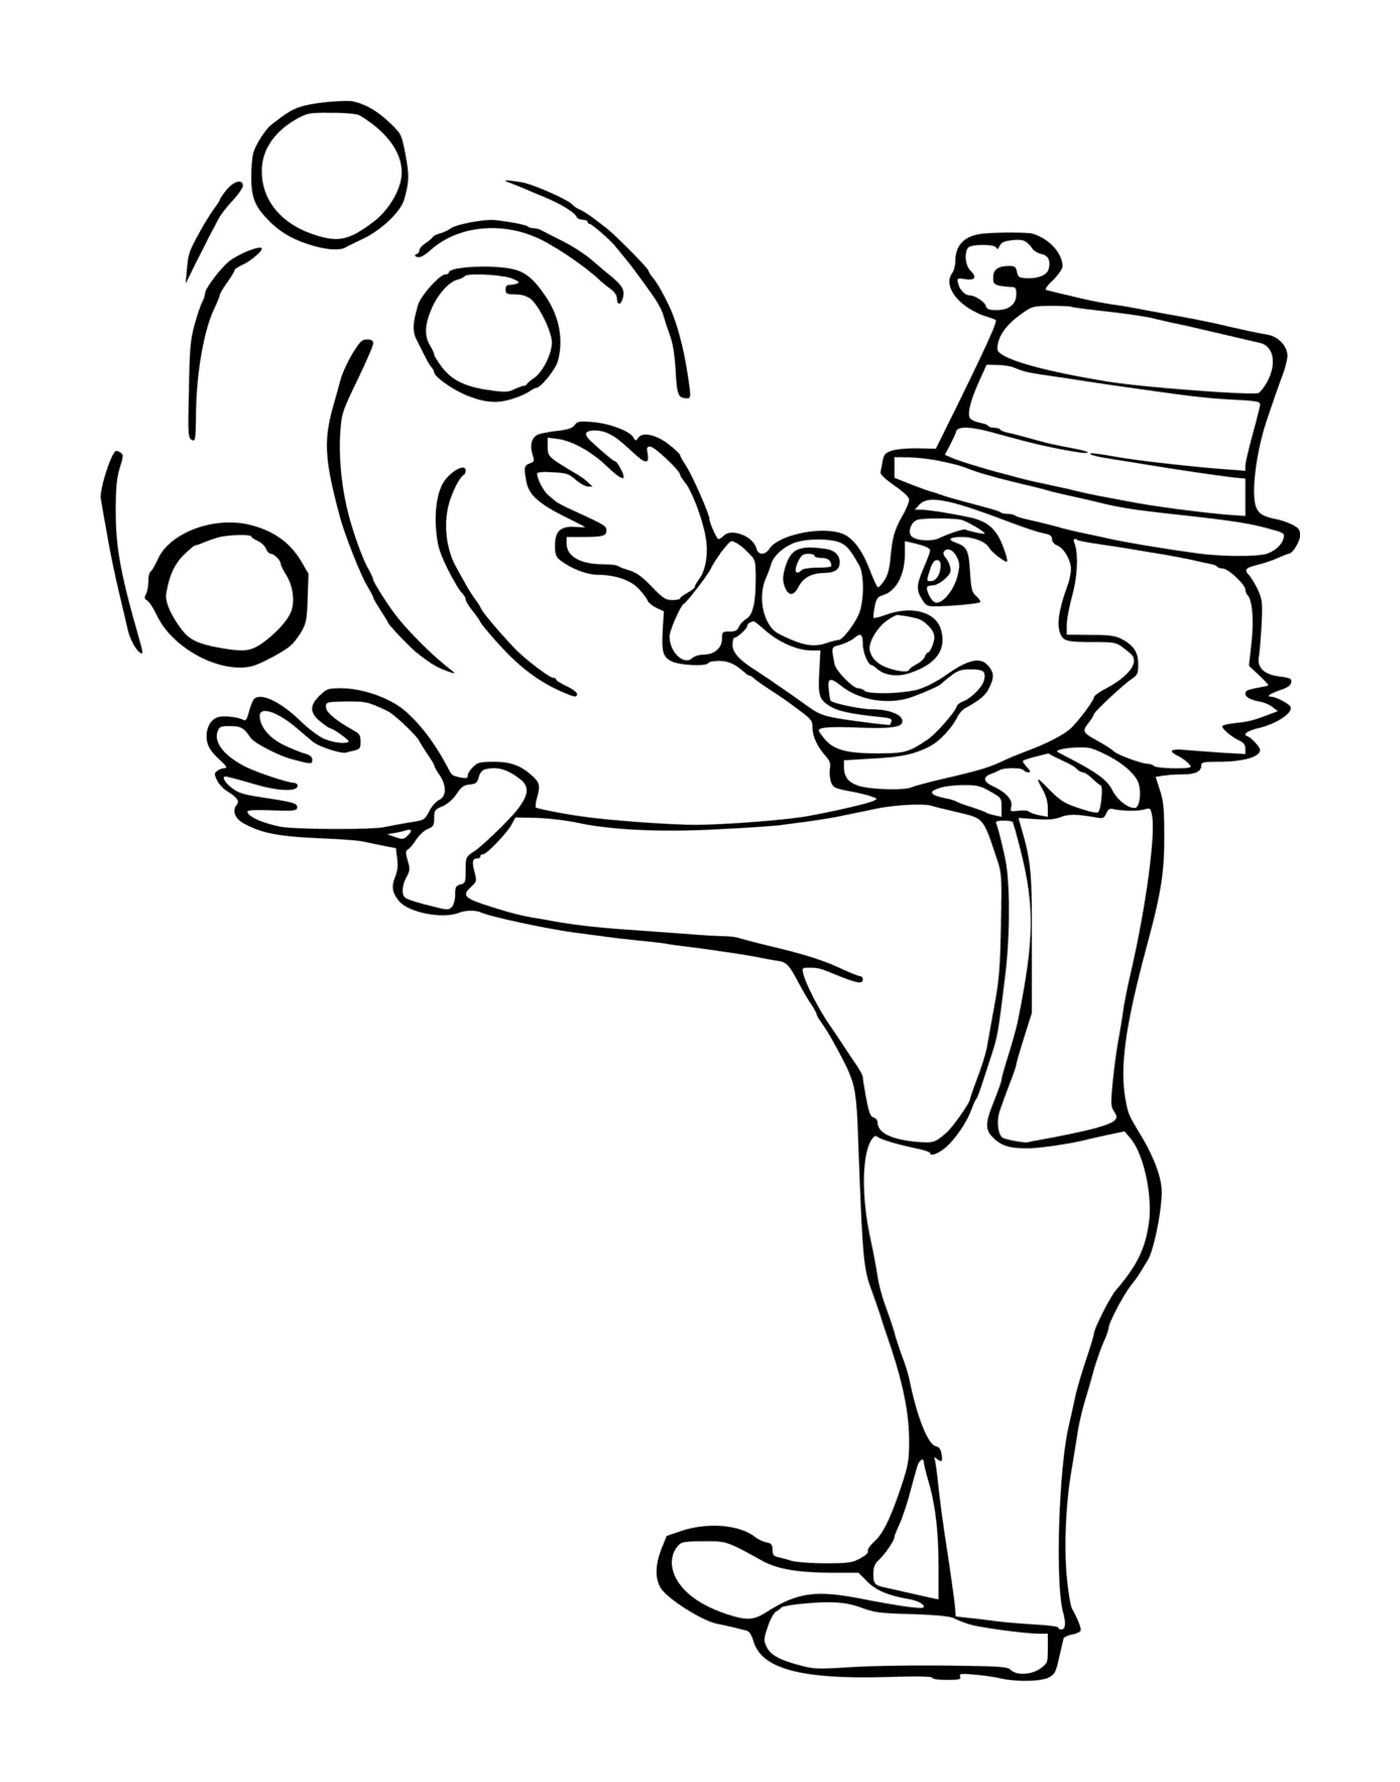  Клоун жонглирует пулями в воздухе 